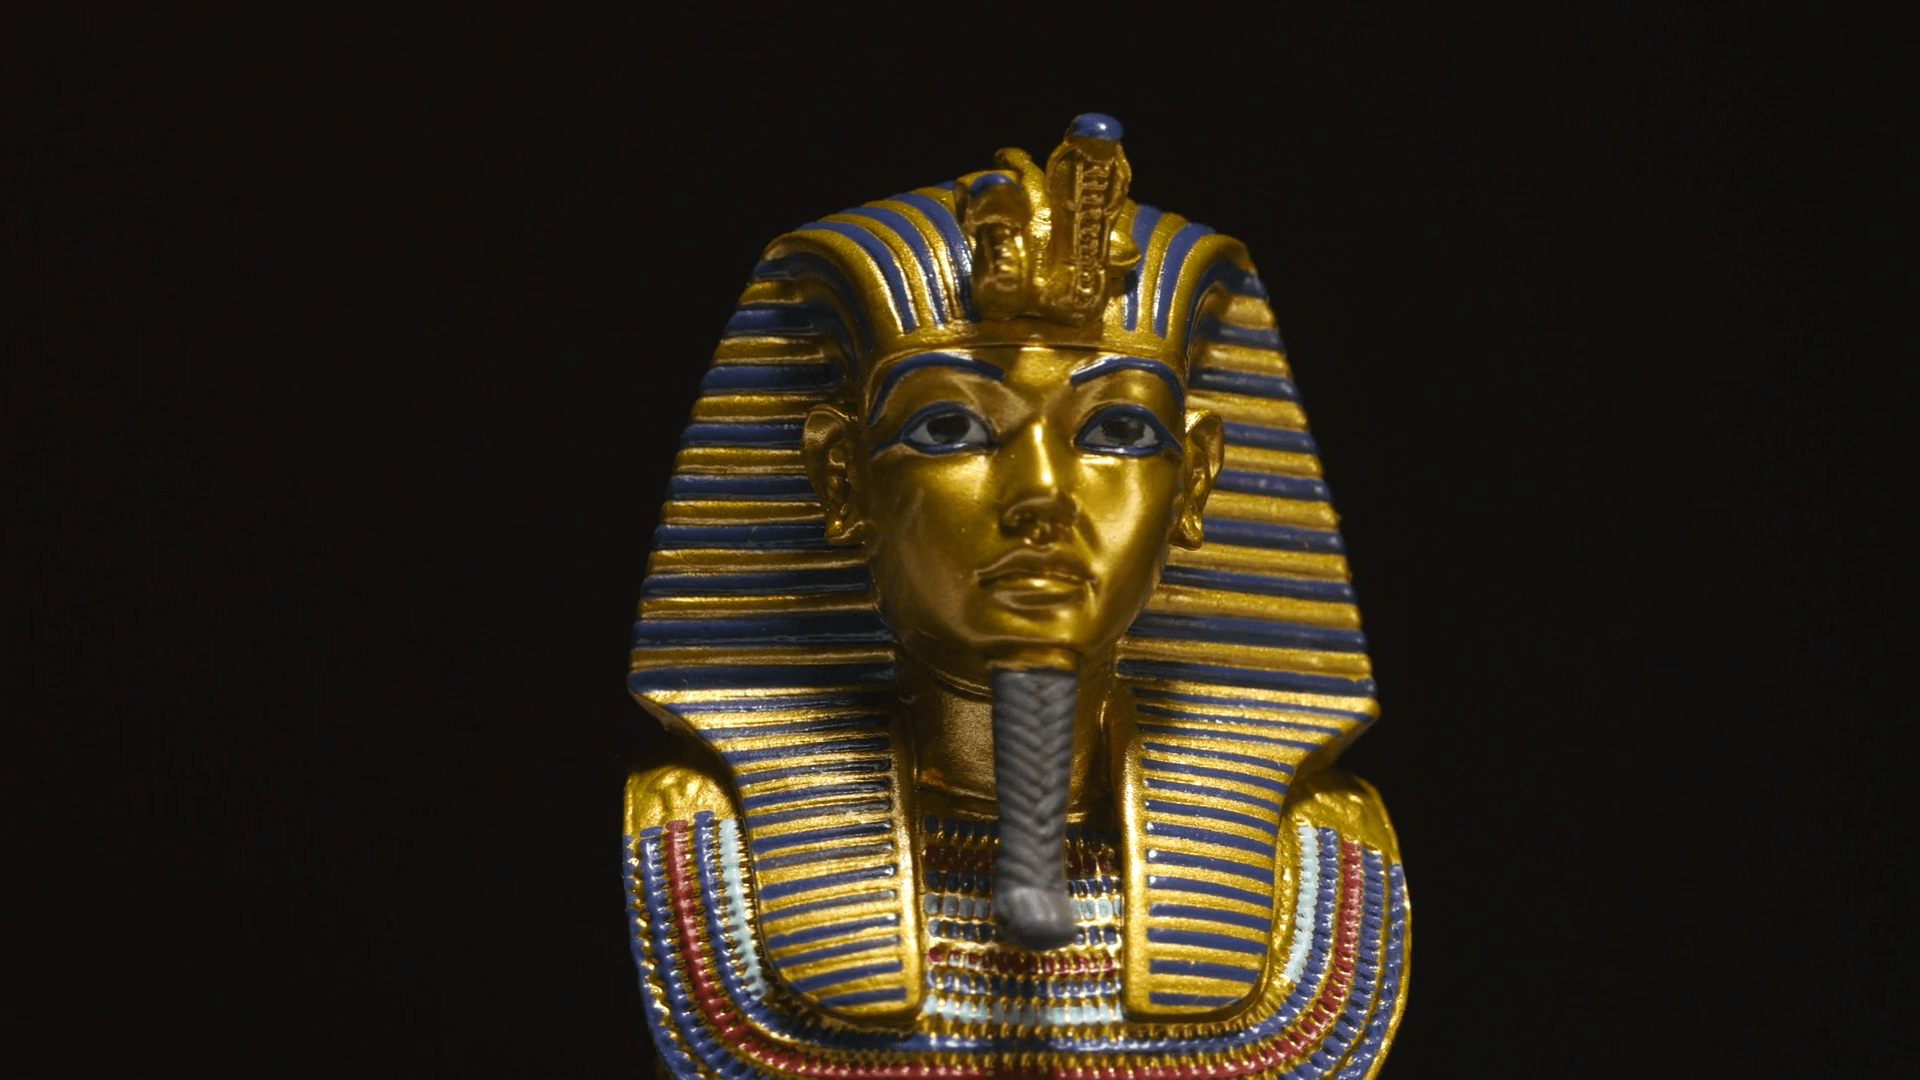 Фараон золото текст